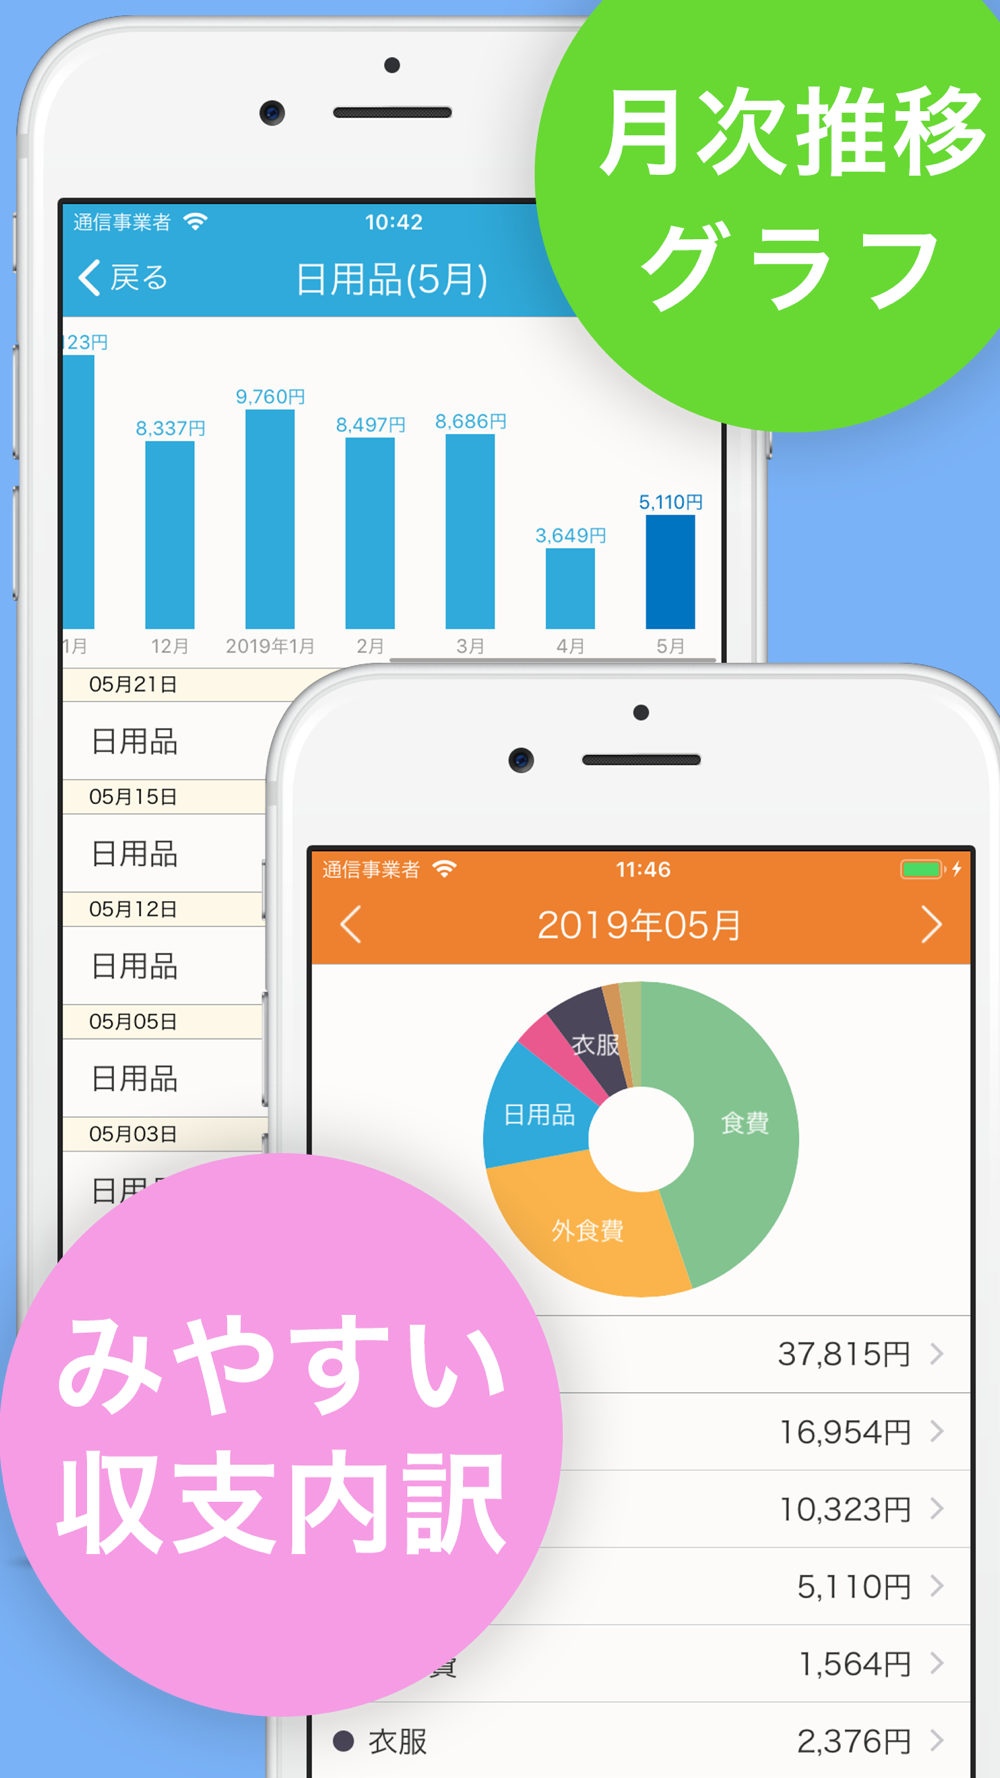 家計簿 簡単お小遣い帳 人気の家計簿かけいぼ Free Download App For Iphone Steprimo Com